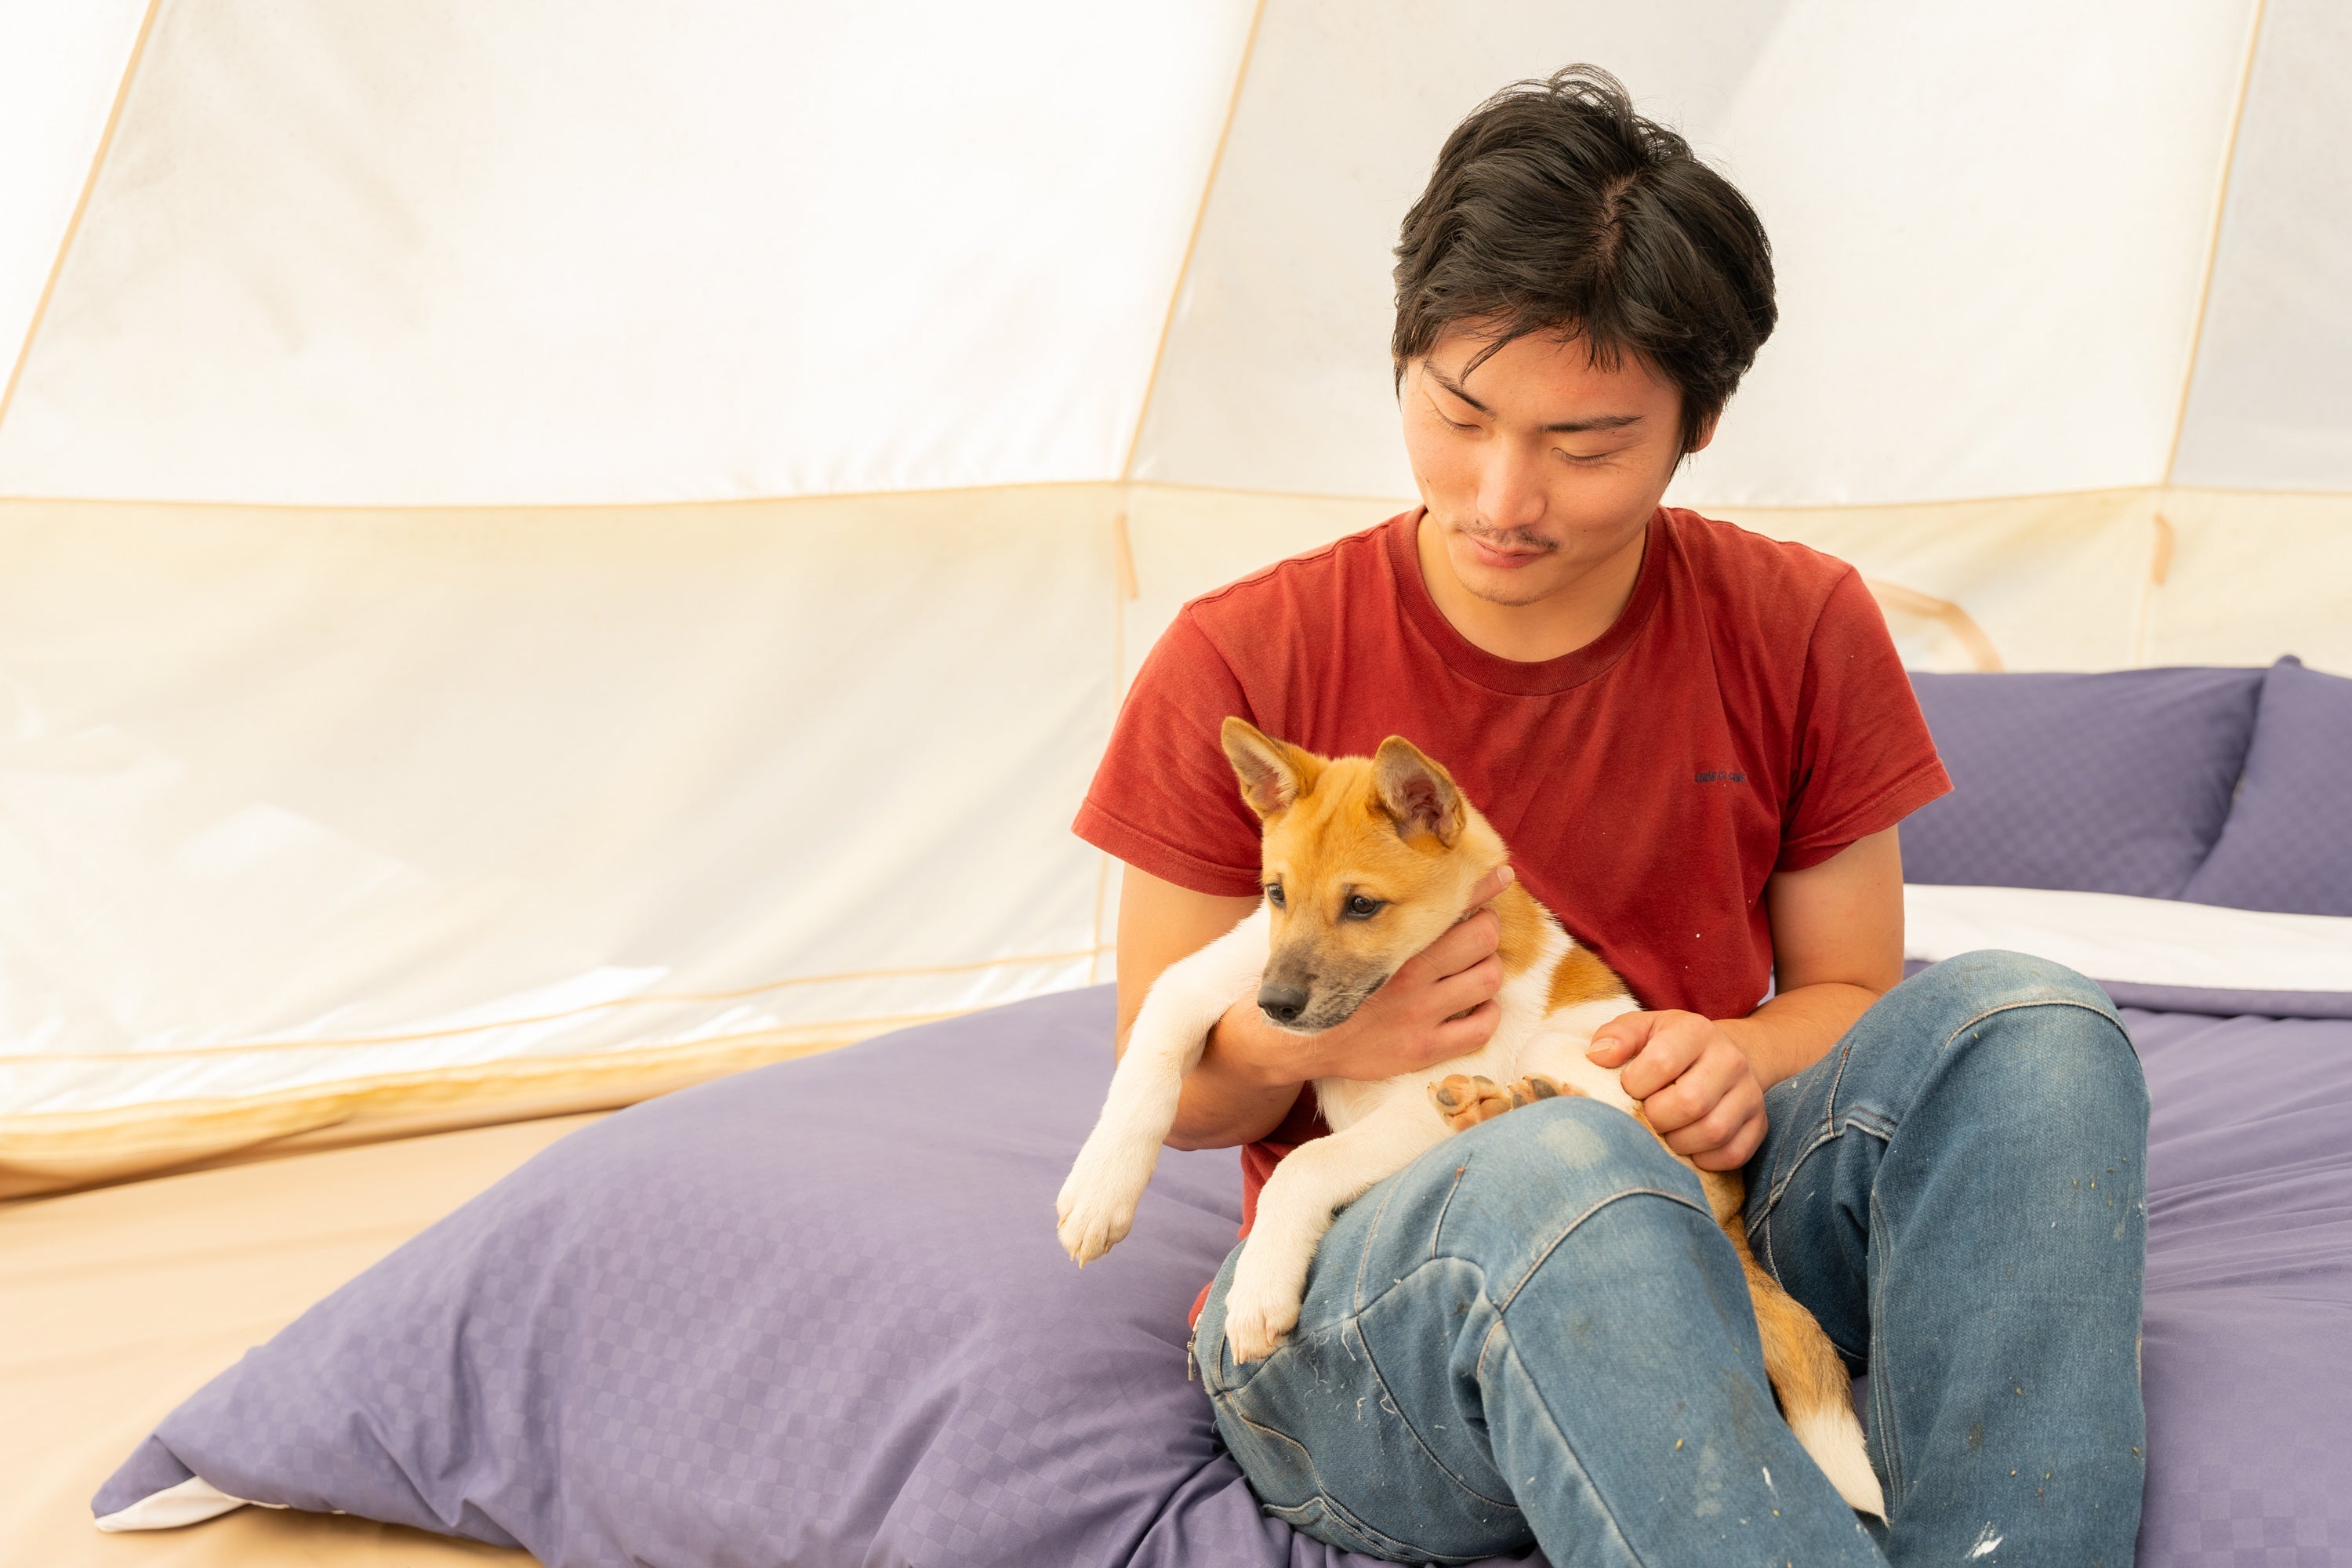 【岡山】小学校・養護学校の生徒と保護犬の触れあいイベント「保護犬ふれあいBBQ」を8月4日に開催いたします。